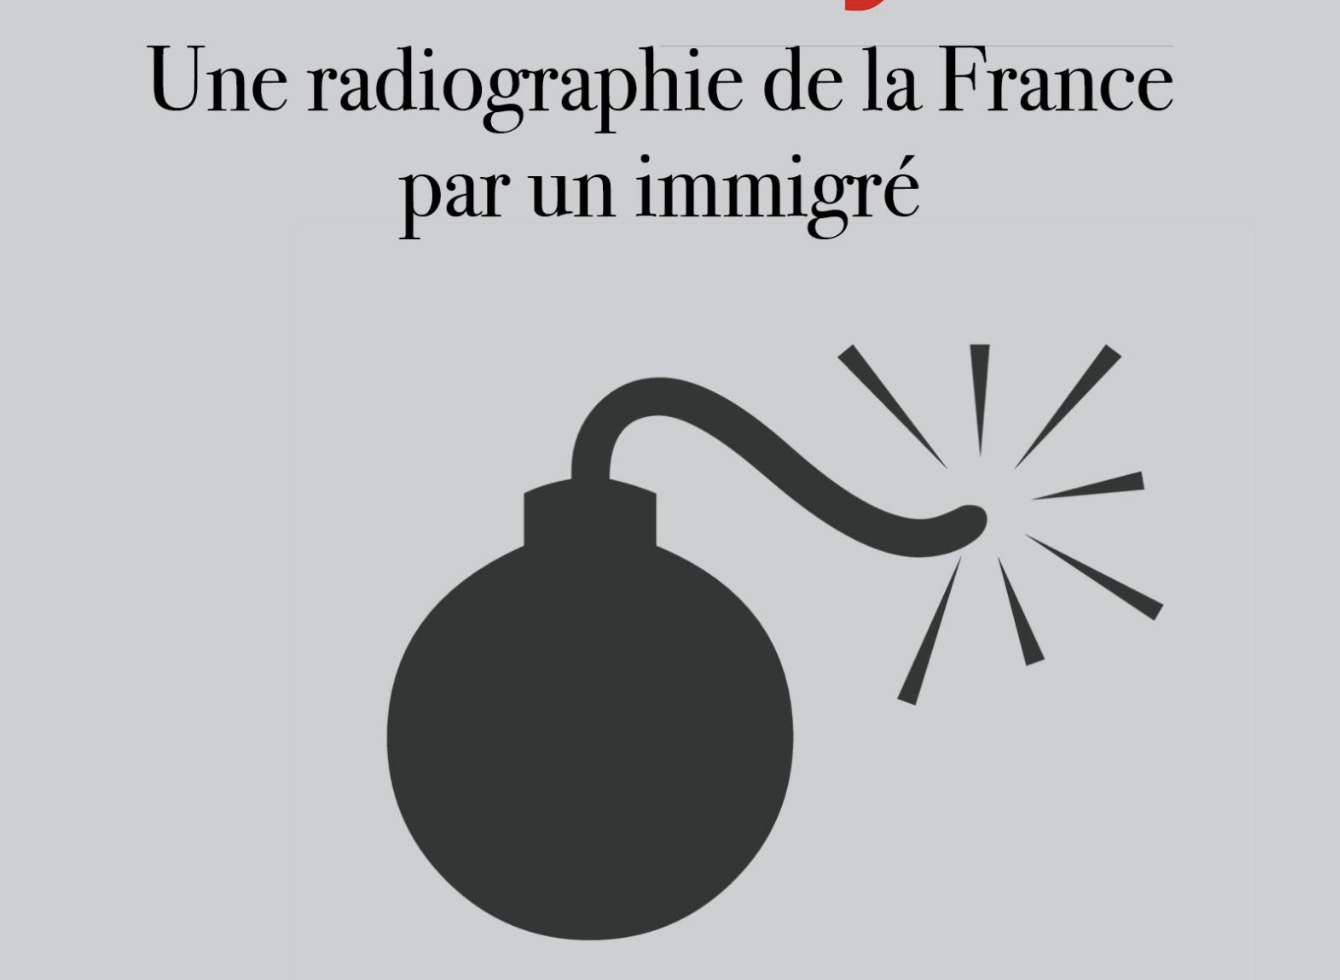 Driss Ghali : « Les Français de souche ne veulent plus la continuation de la France » Ouvrez